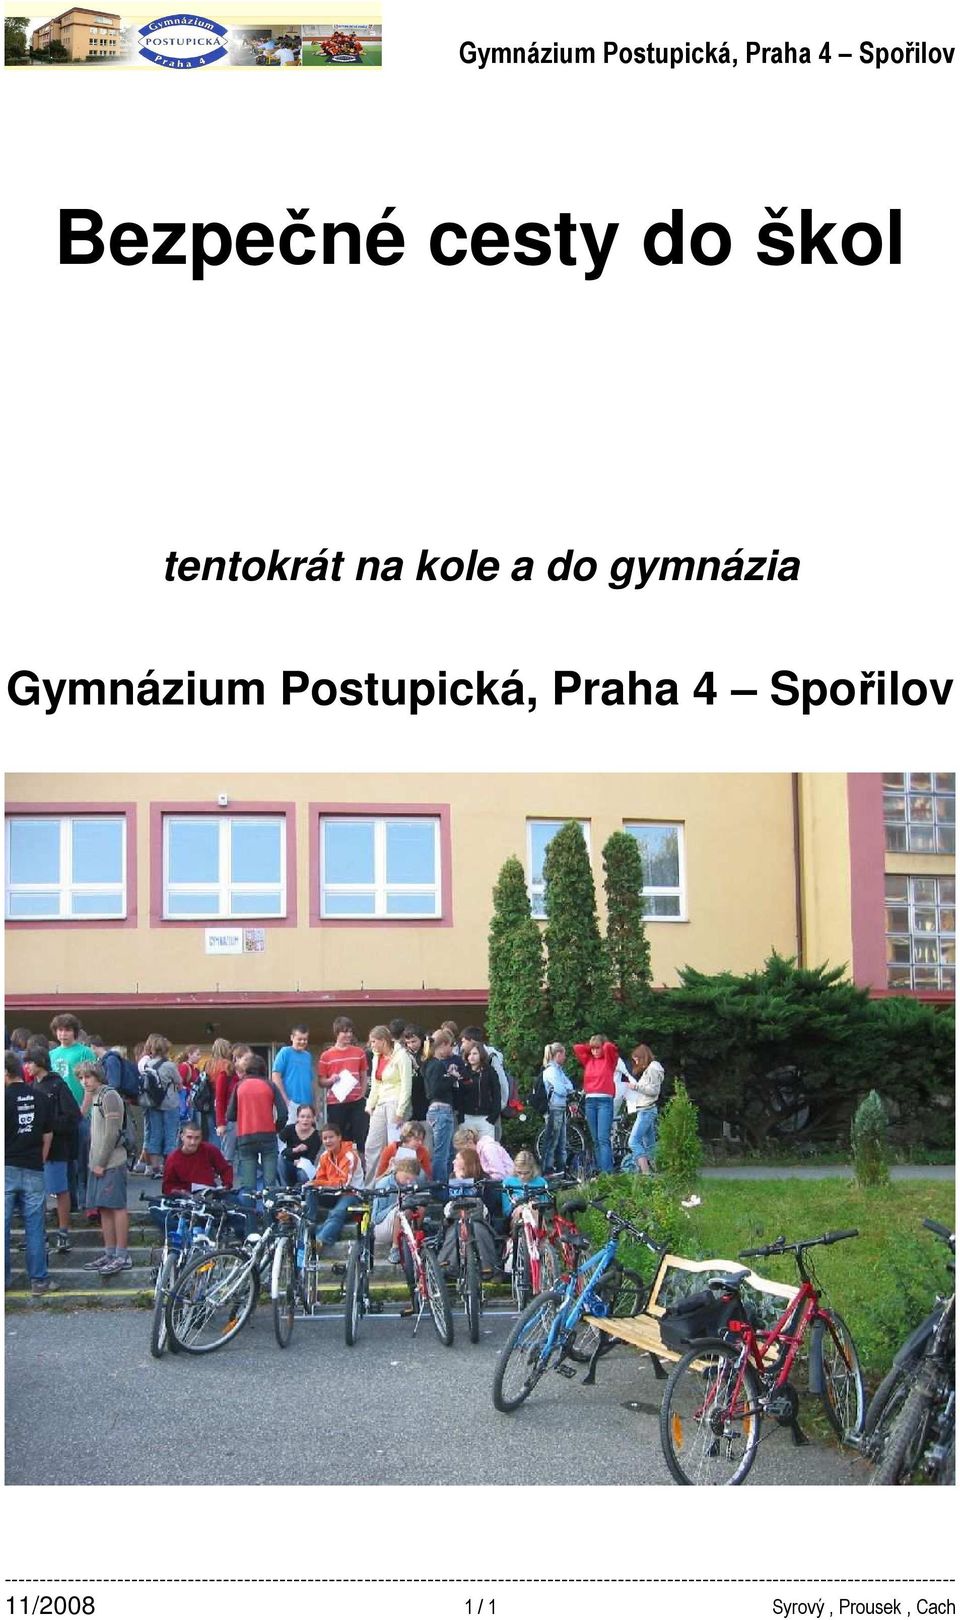 Postupická, Praha 4 Spořilov